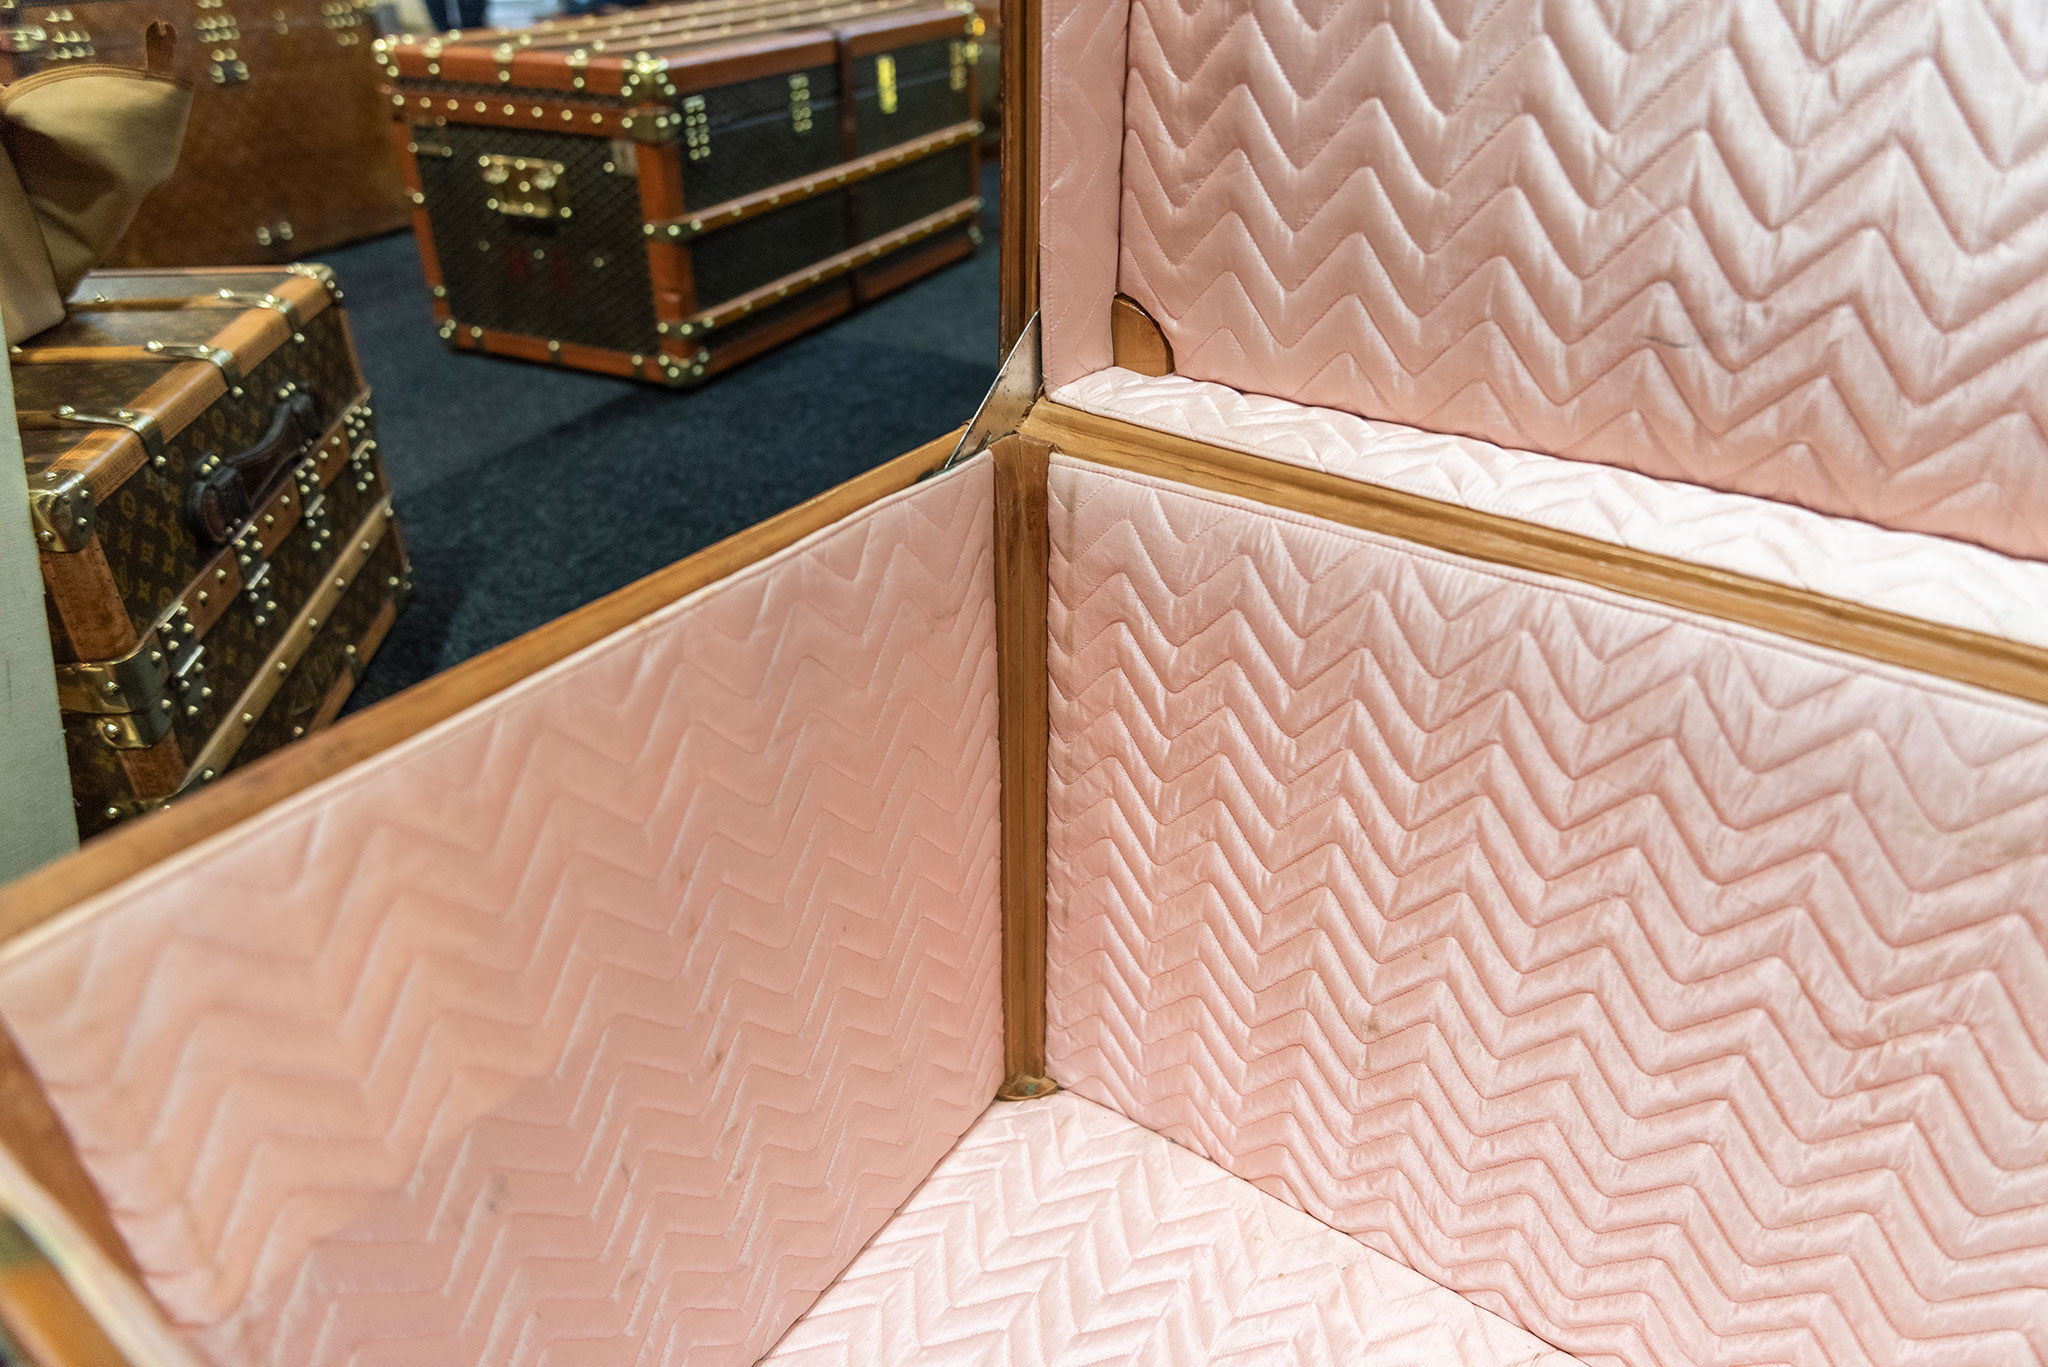 Les angles des malles comportent des supports en bois pour faire glisser l’élément contenant la lingerie - Bagagerie Vintage.